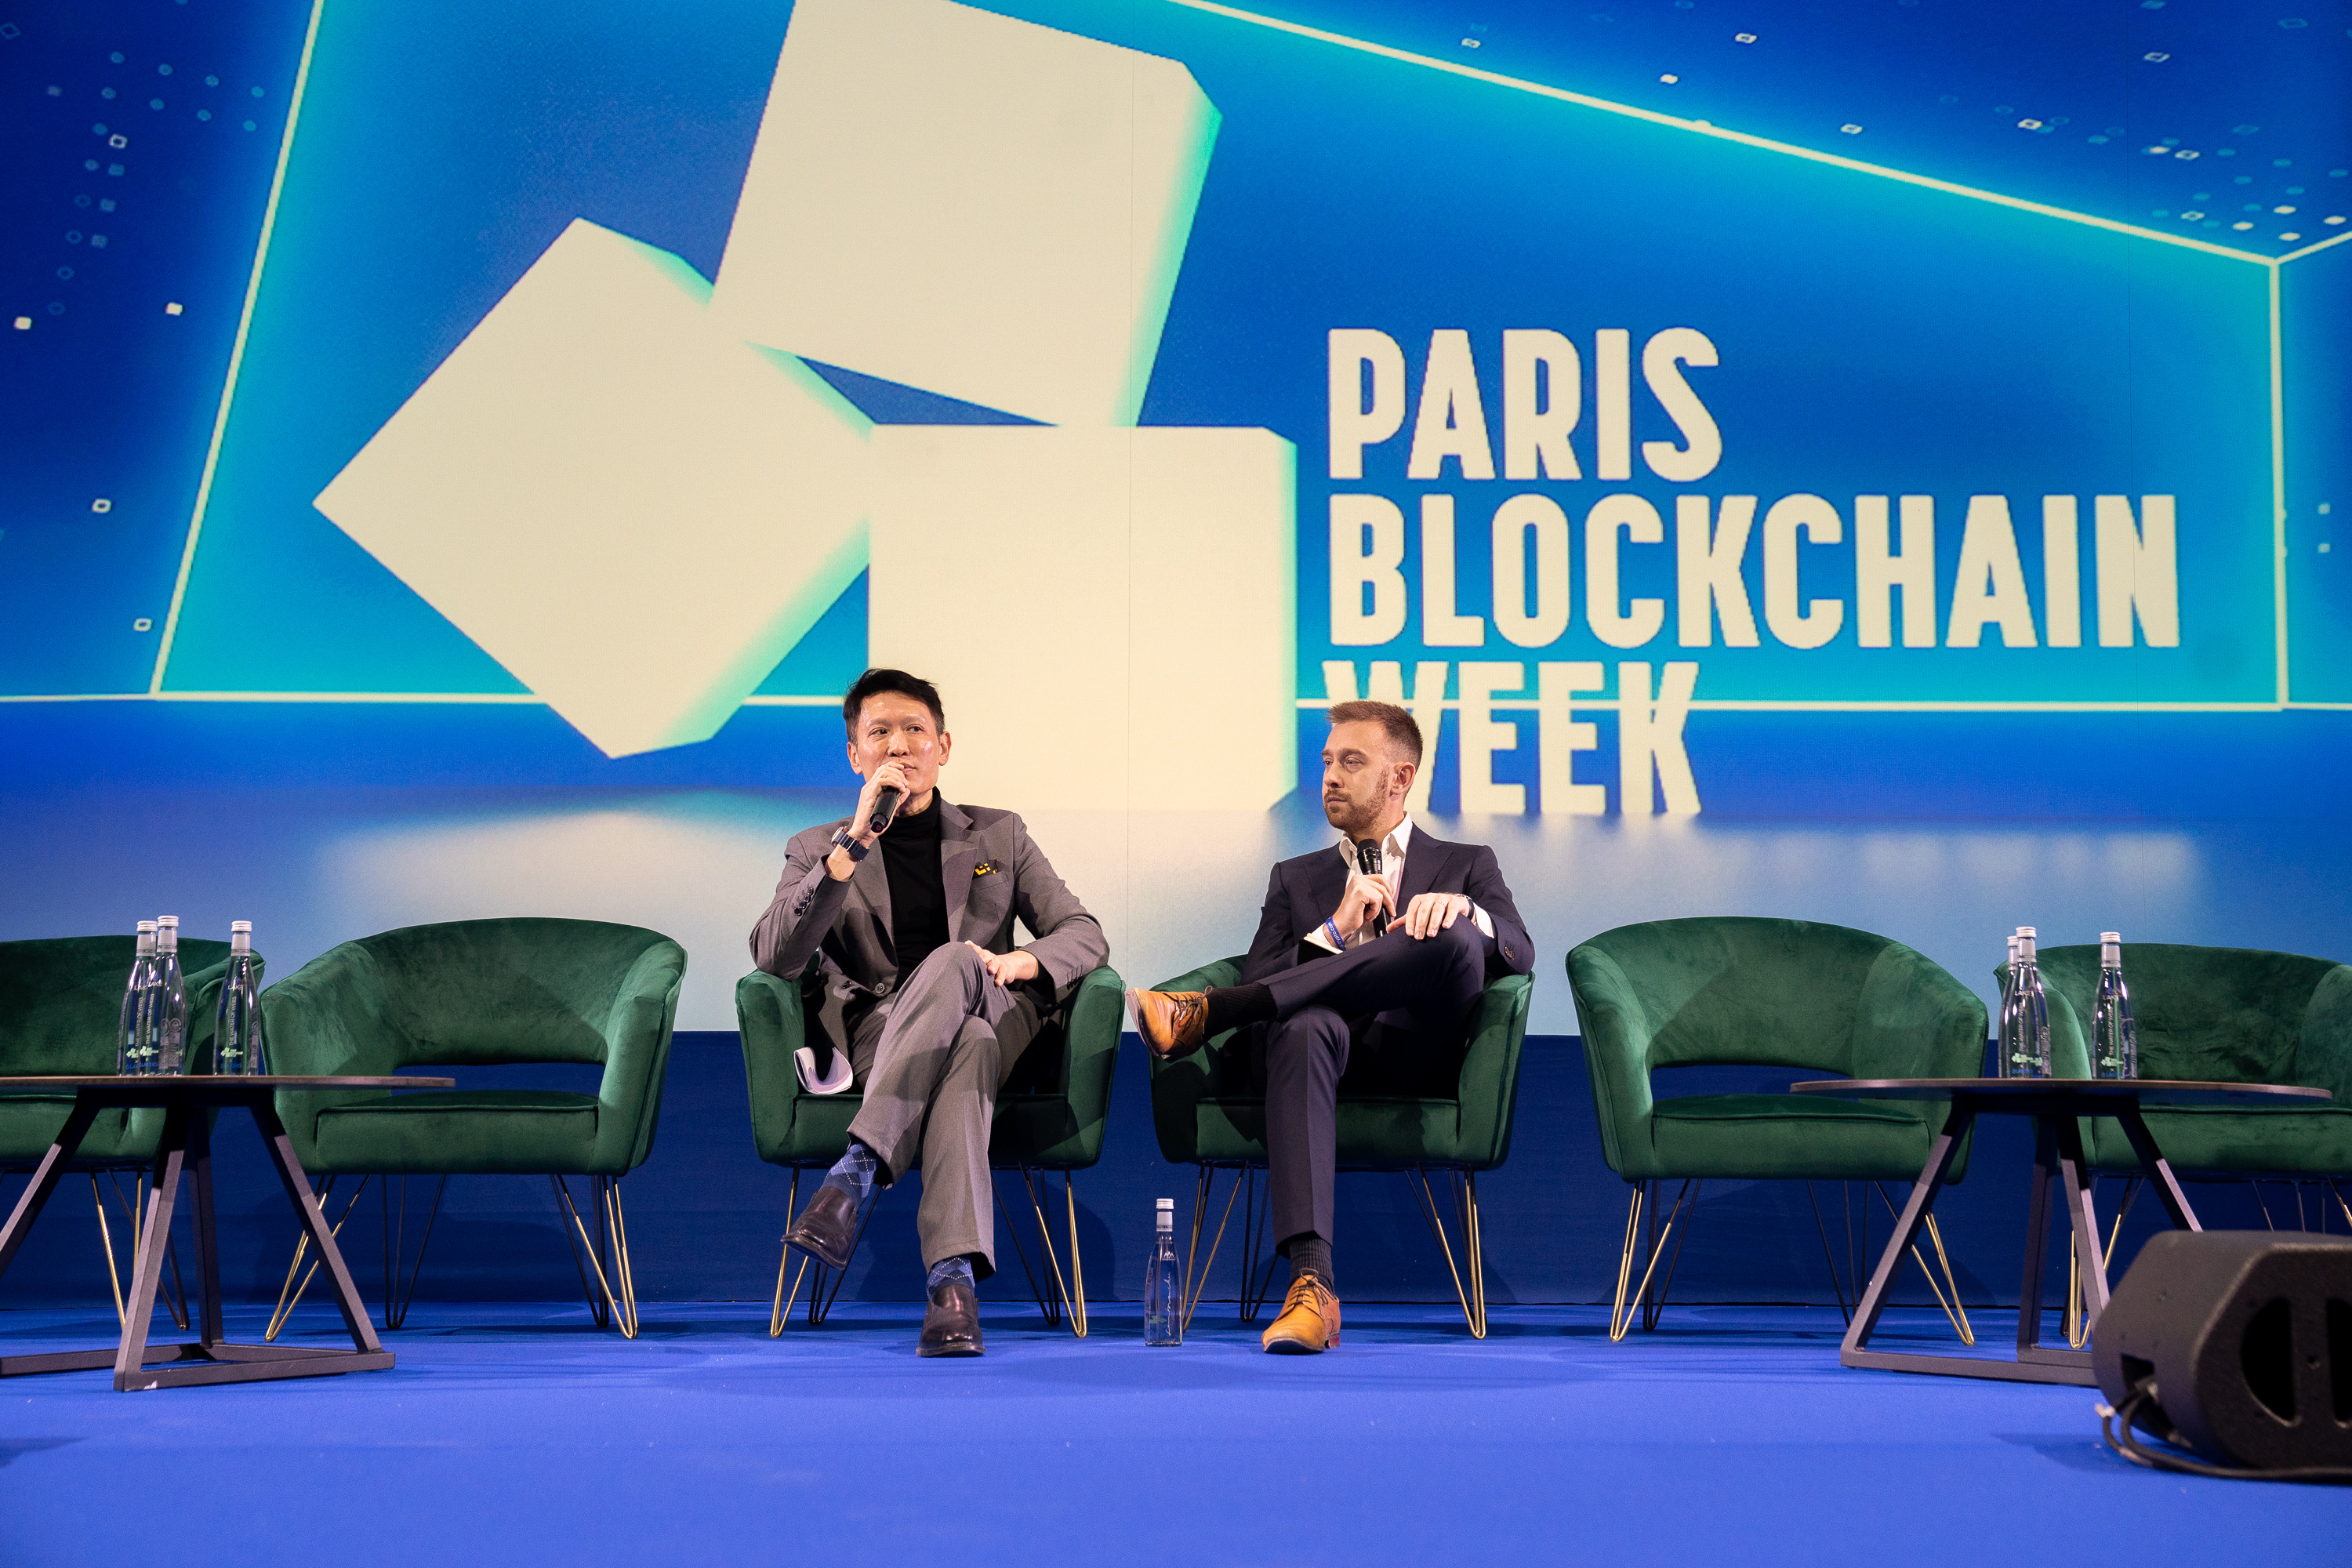 La Paris Blockchain Week. Le bilan de l'événement qui met en lumière les innovations et les progrès réalisés par le Web3